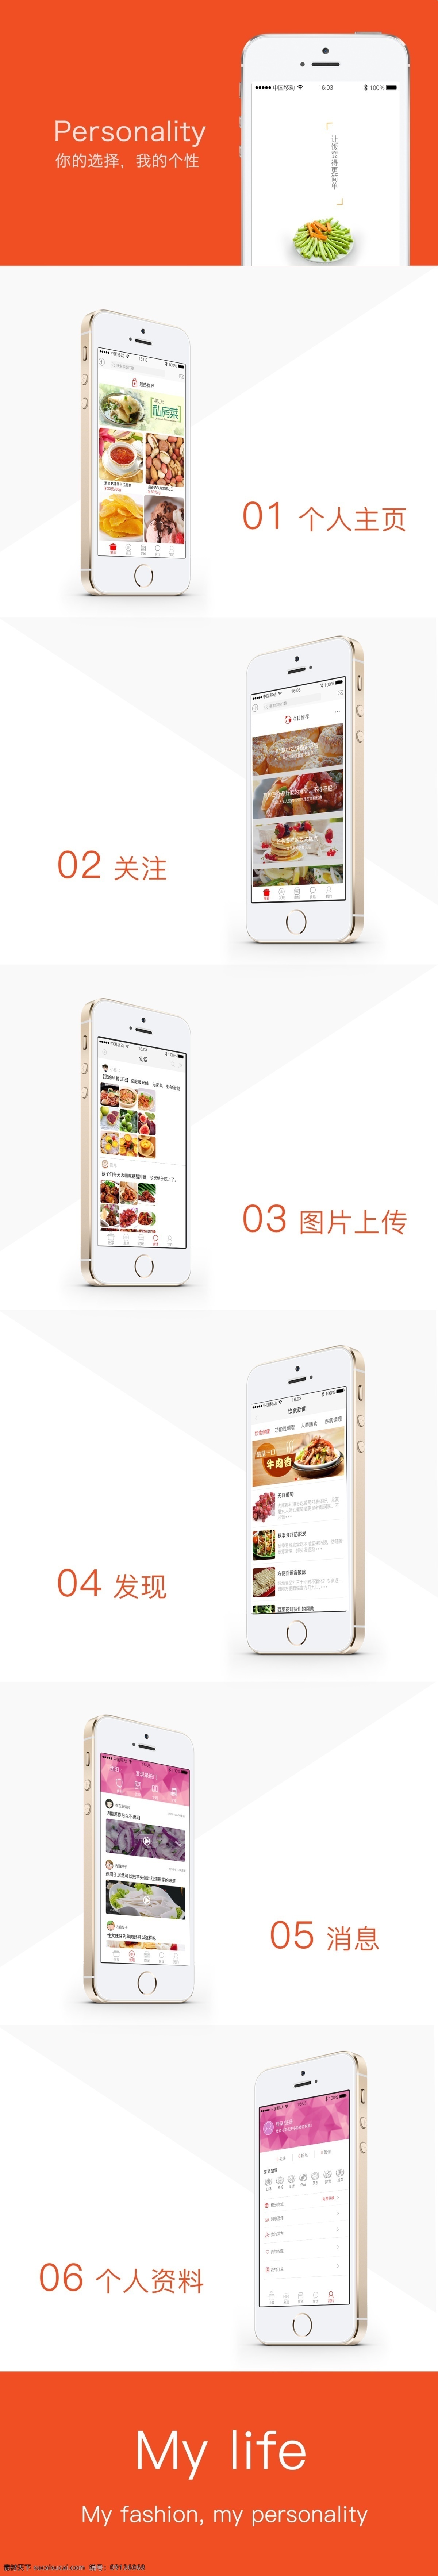 美食 app 展示 页 美食app 展示模板 app展示 橙色展示页 个人主页界面 个人资料界面